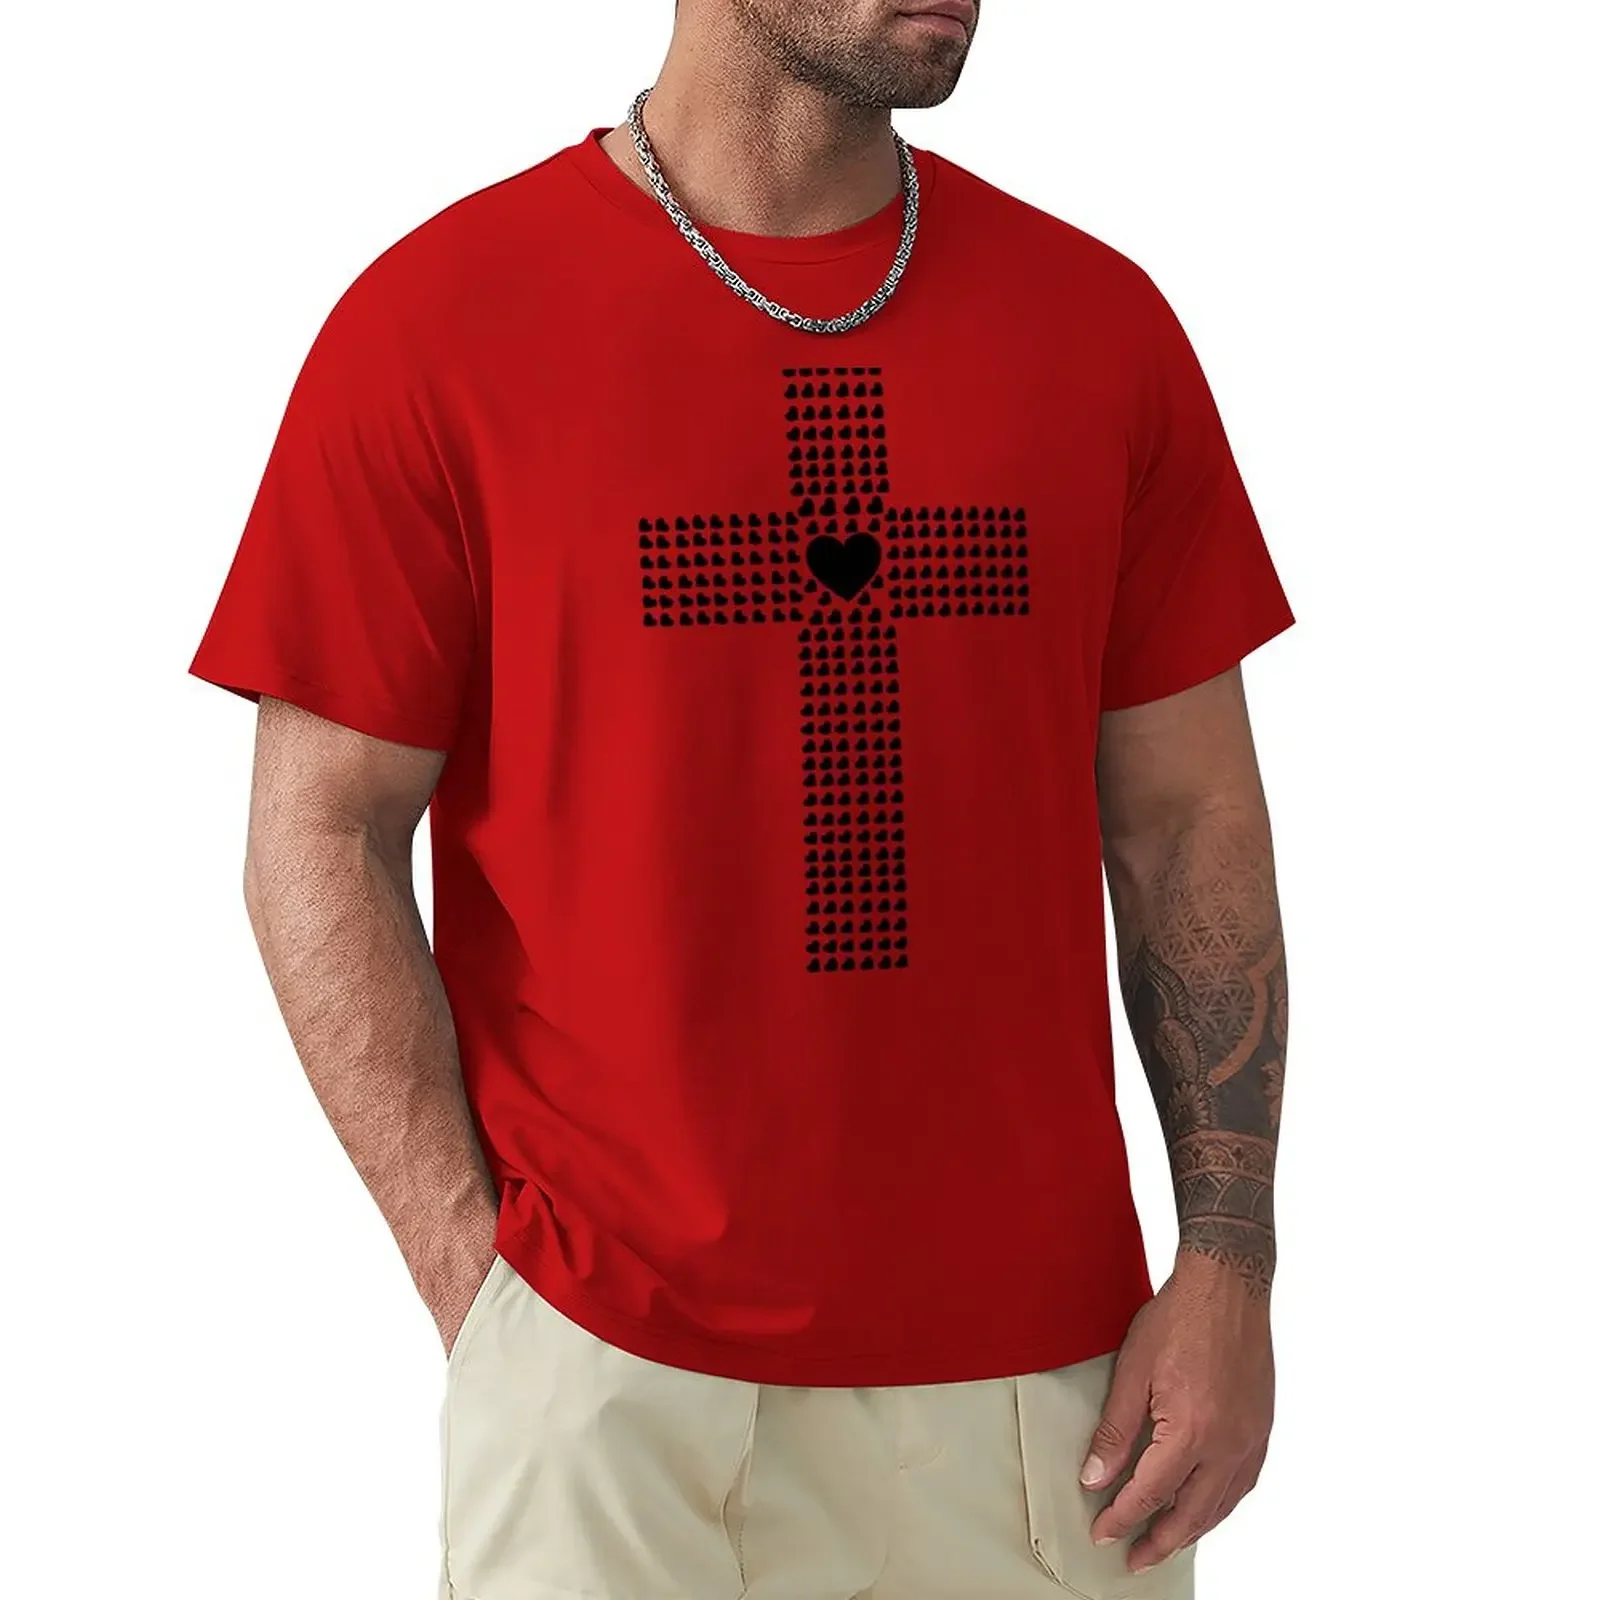 

Мужская быстросохнущая рубашка для тренировок Cross of футболка с сердечками vintage